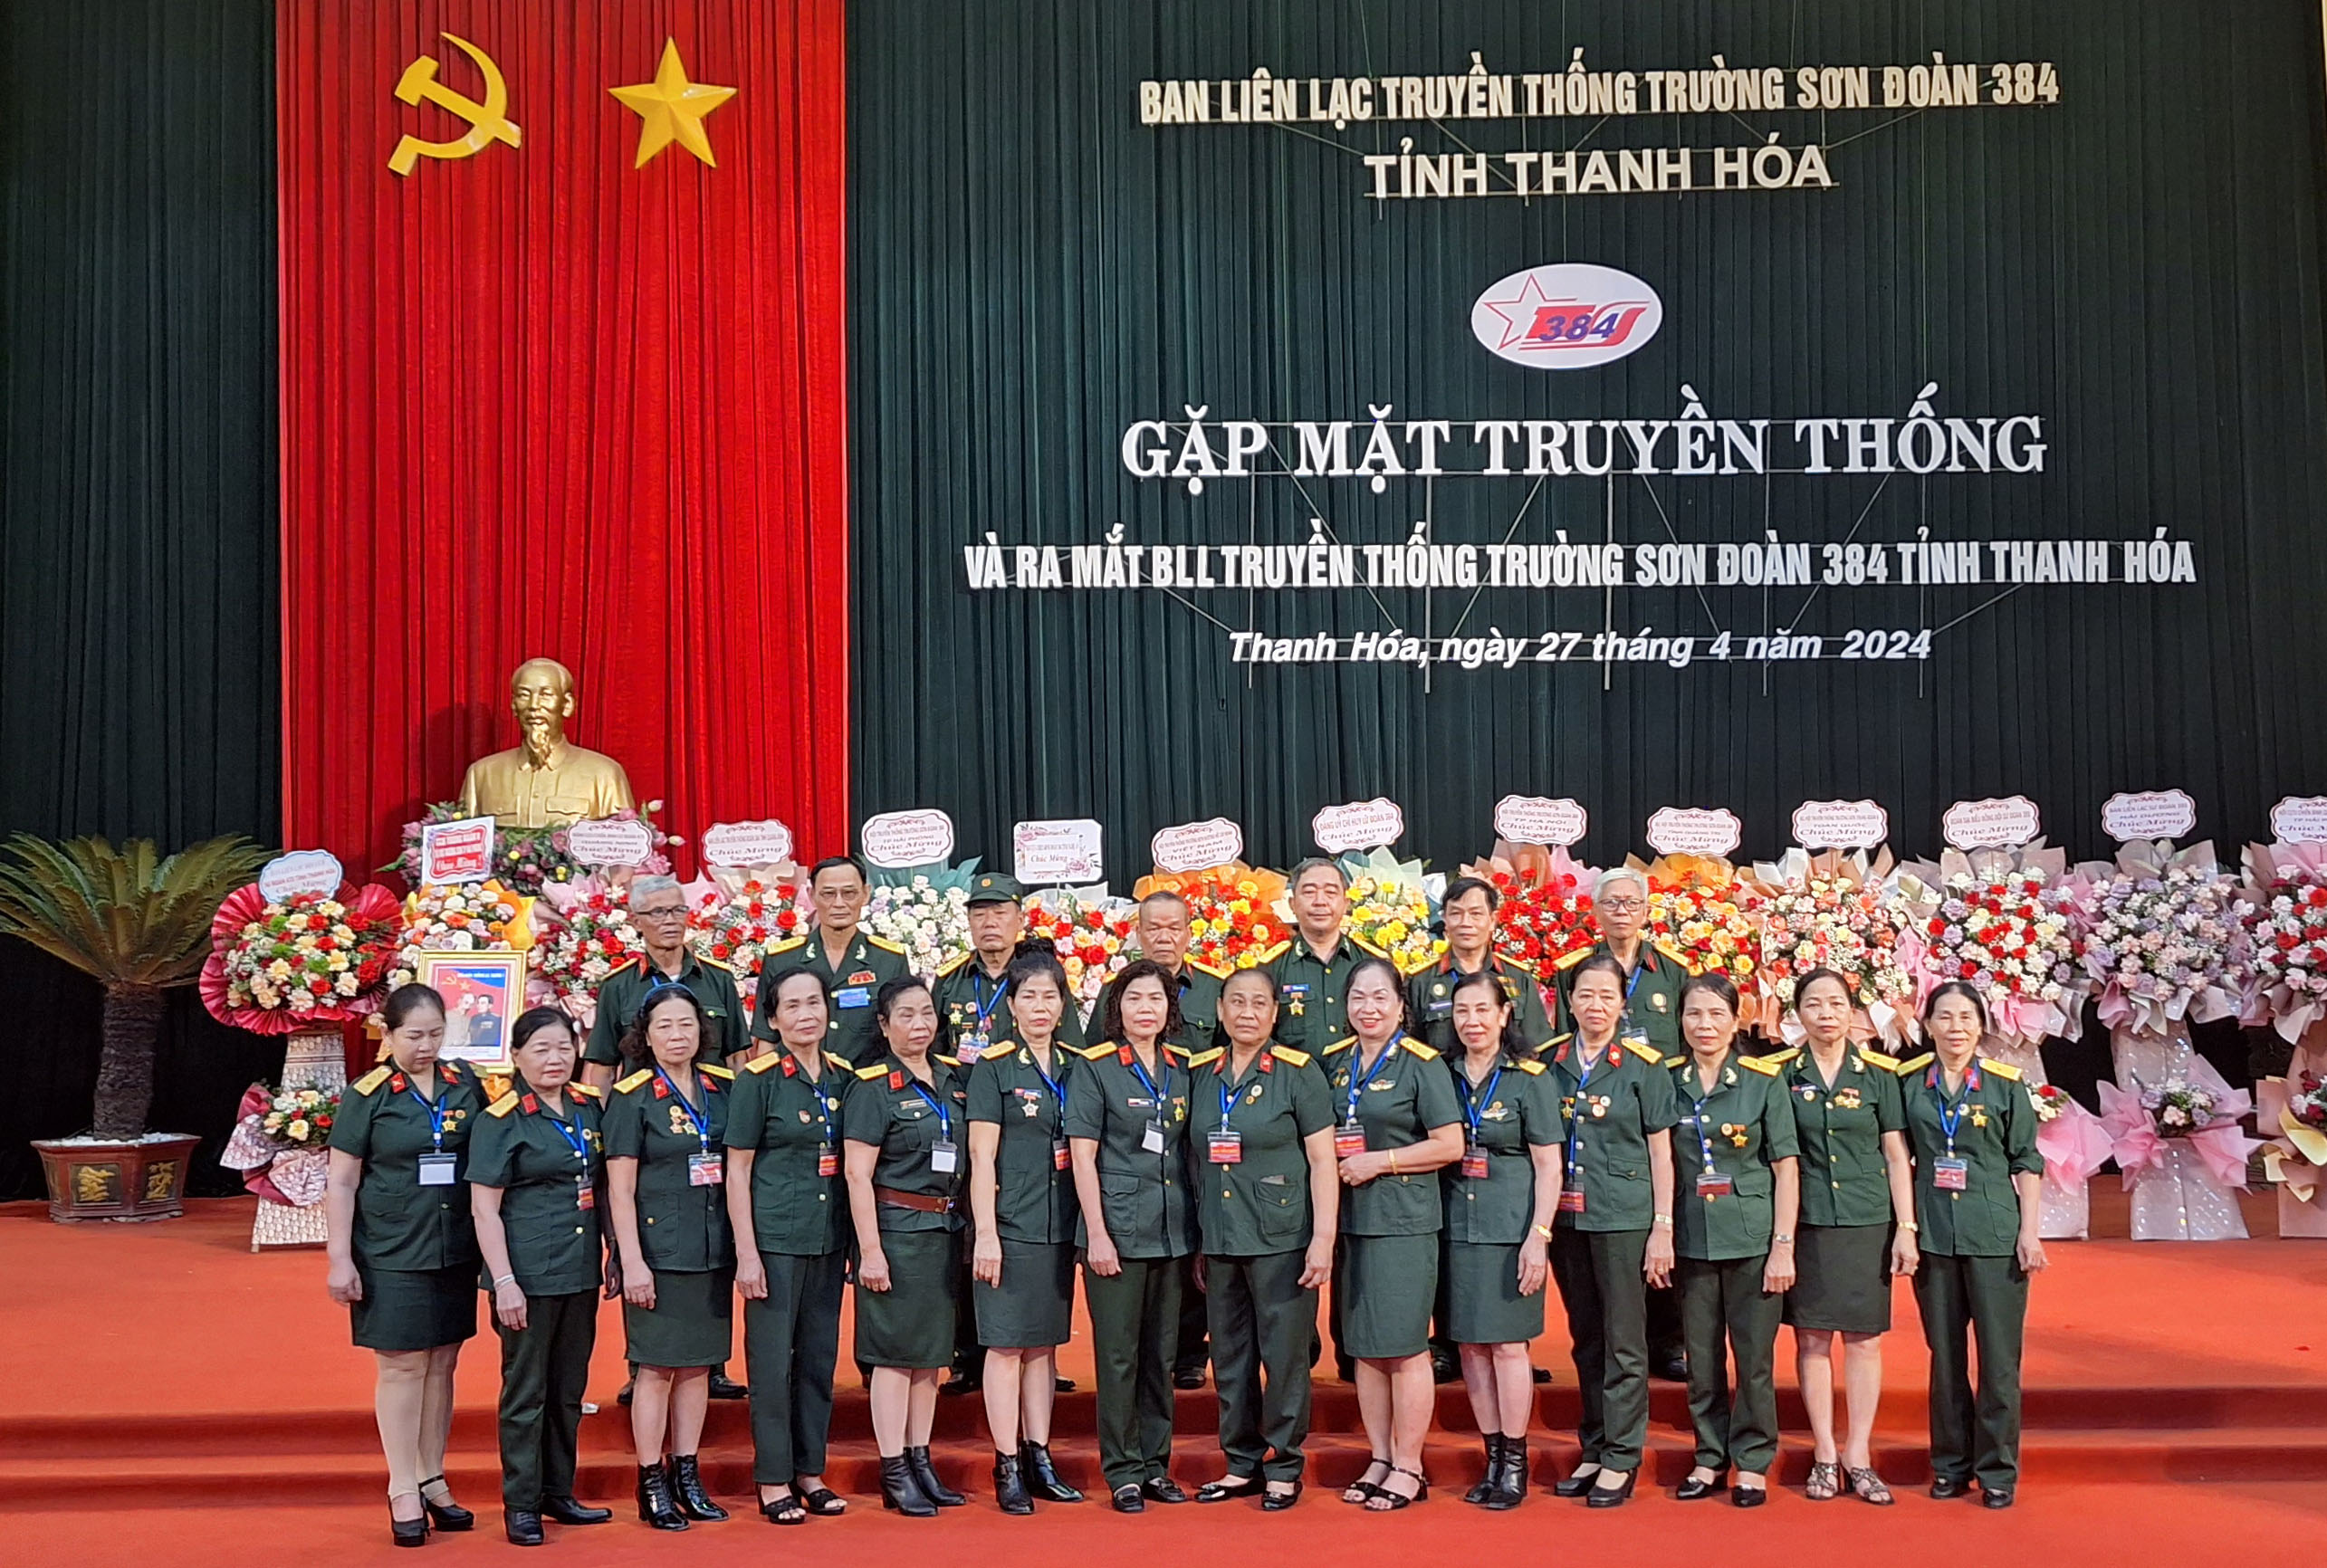 Gặp mặt kỉ niệm 65 năm ngày truyền thống bộ đội Trường Sơn và đoàn 384 anh hùng; ra mắt BLL Đoàn 384 tỉnh Thanh Hoá